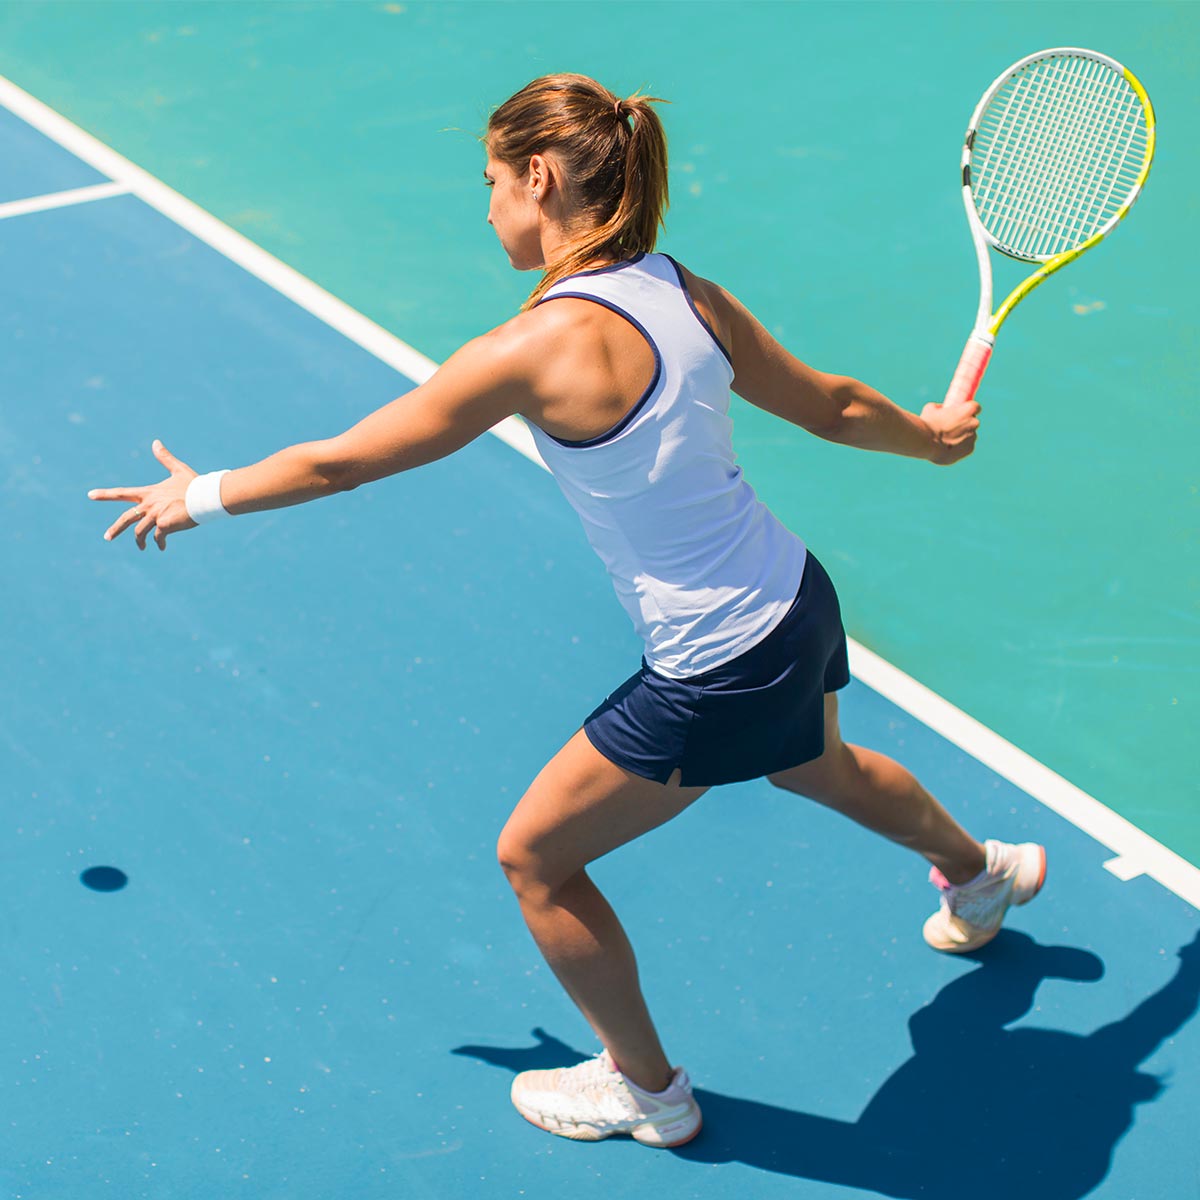 femme qui joue au tennis